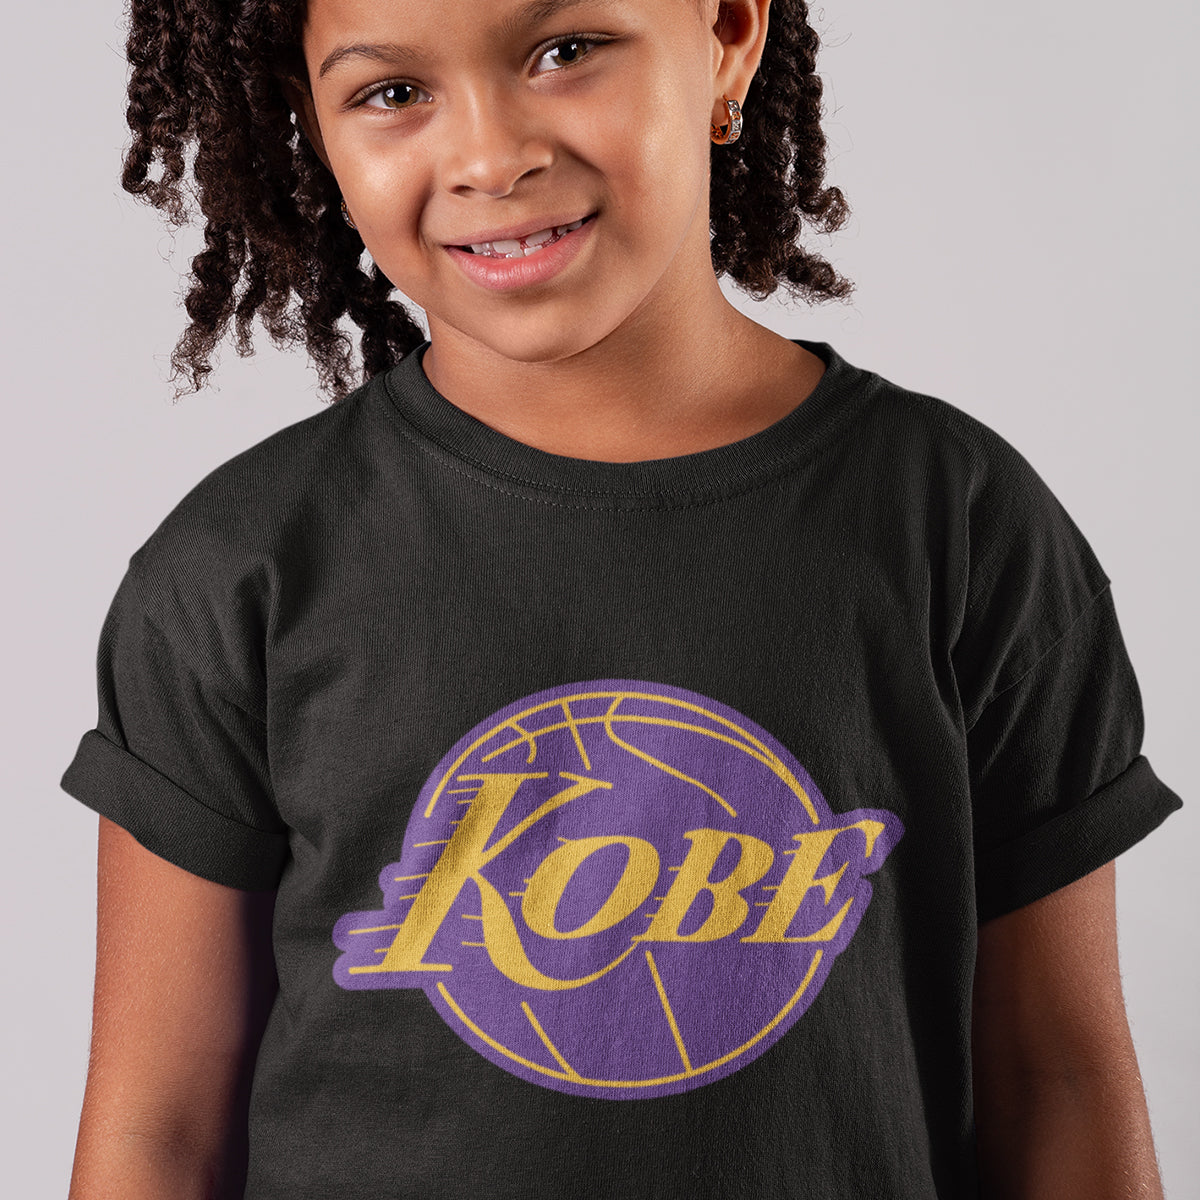 KOBE BRYANT  Kobe bryant shirt, Kobe bryant, Kobe shirts